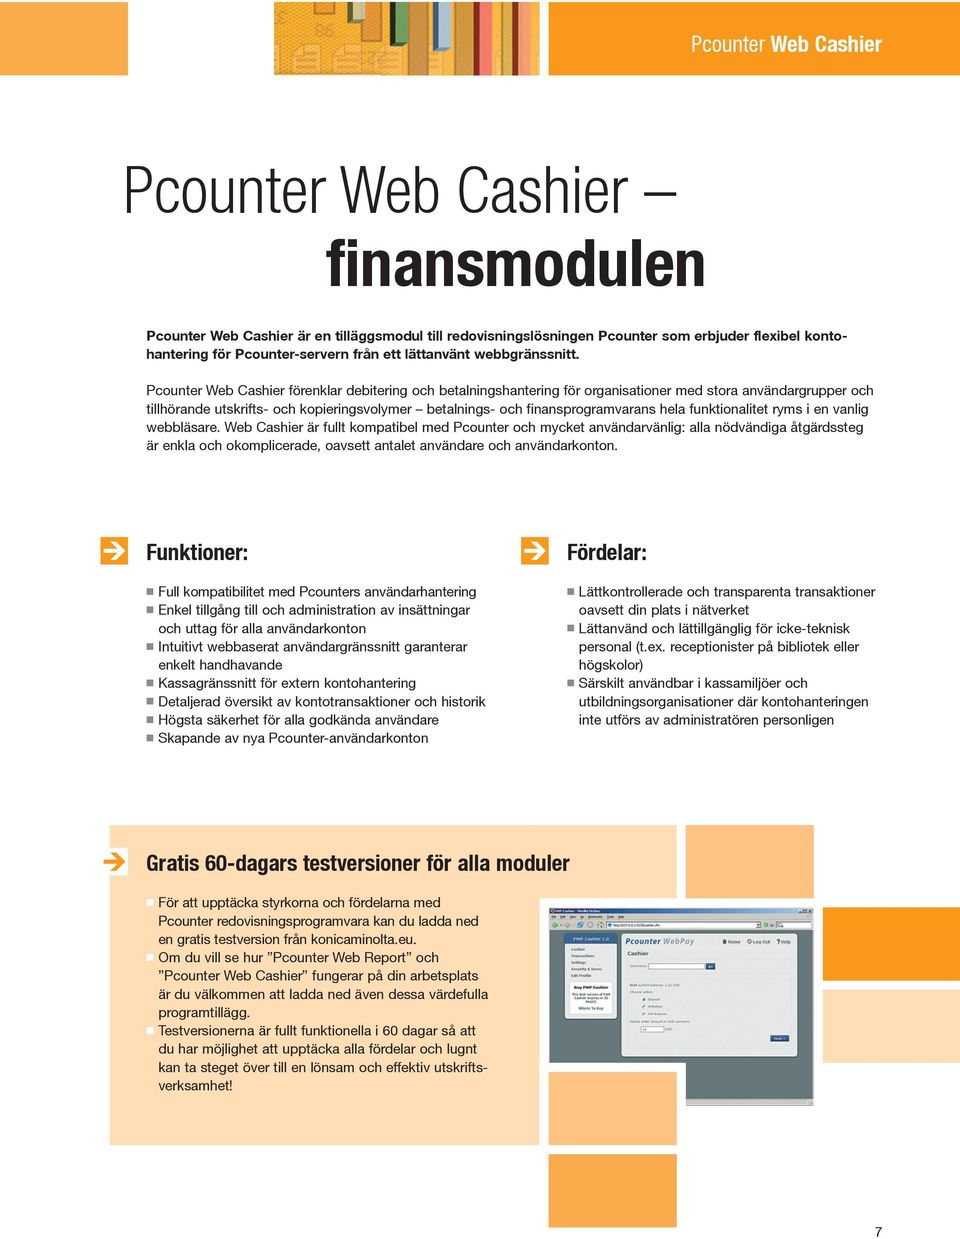 Pcounter Web Cashier förenklar debitering och betalningshantering för organisationer med stora användargrupper och tillhörande utskrifts- och kopieringsvolymer betalnings- och finansprogramvarans